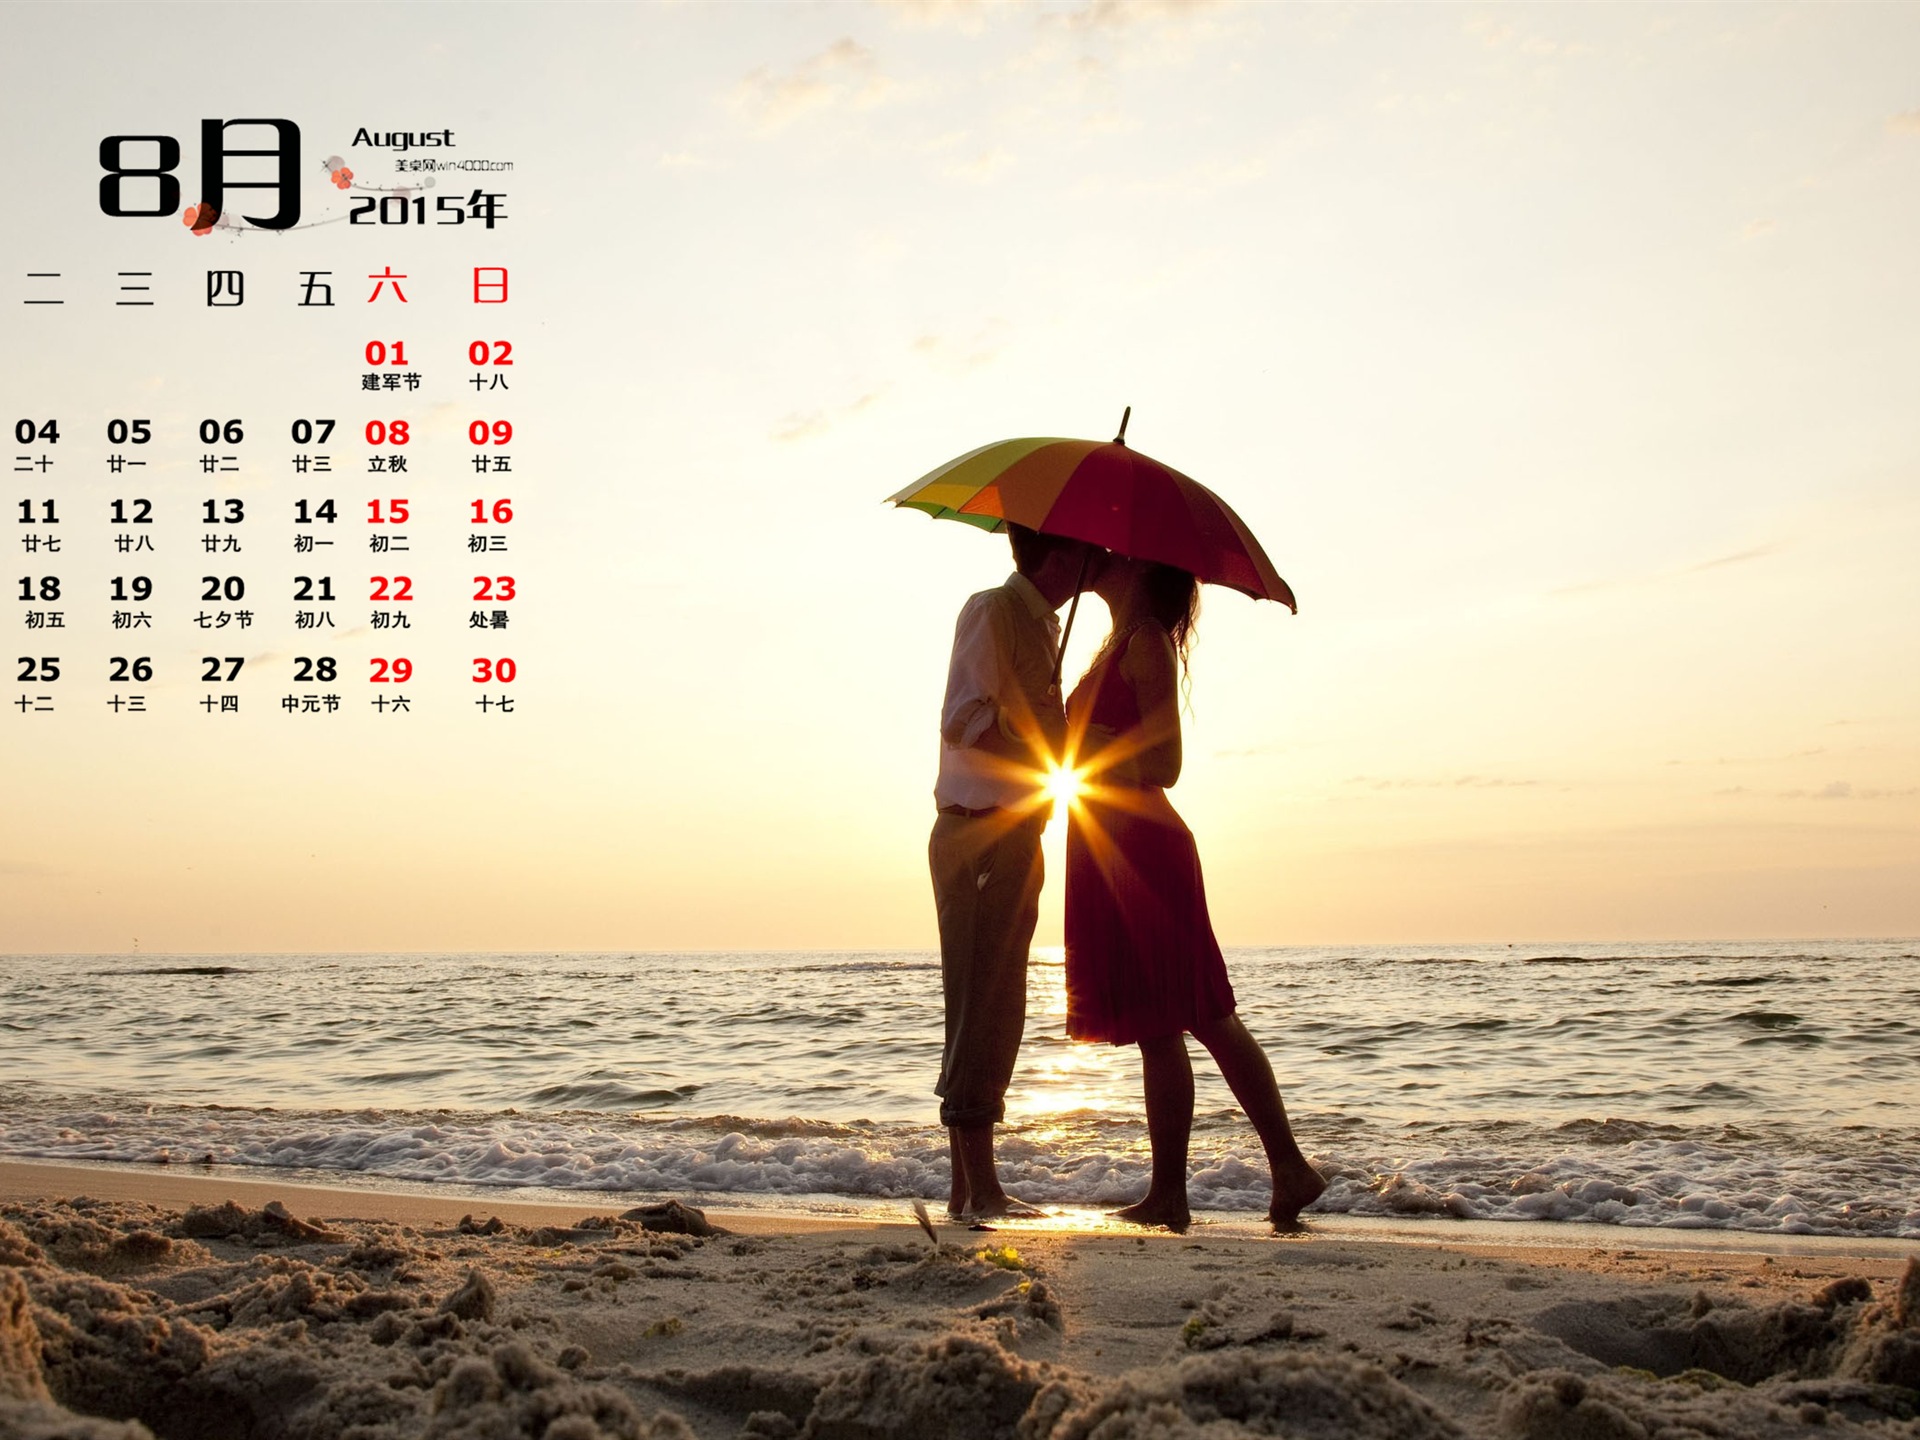 08. 2015 kalendář tapety (1) #14 - 1920x1440